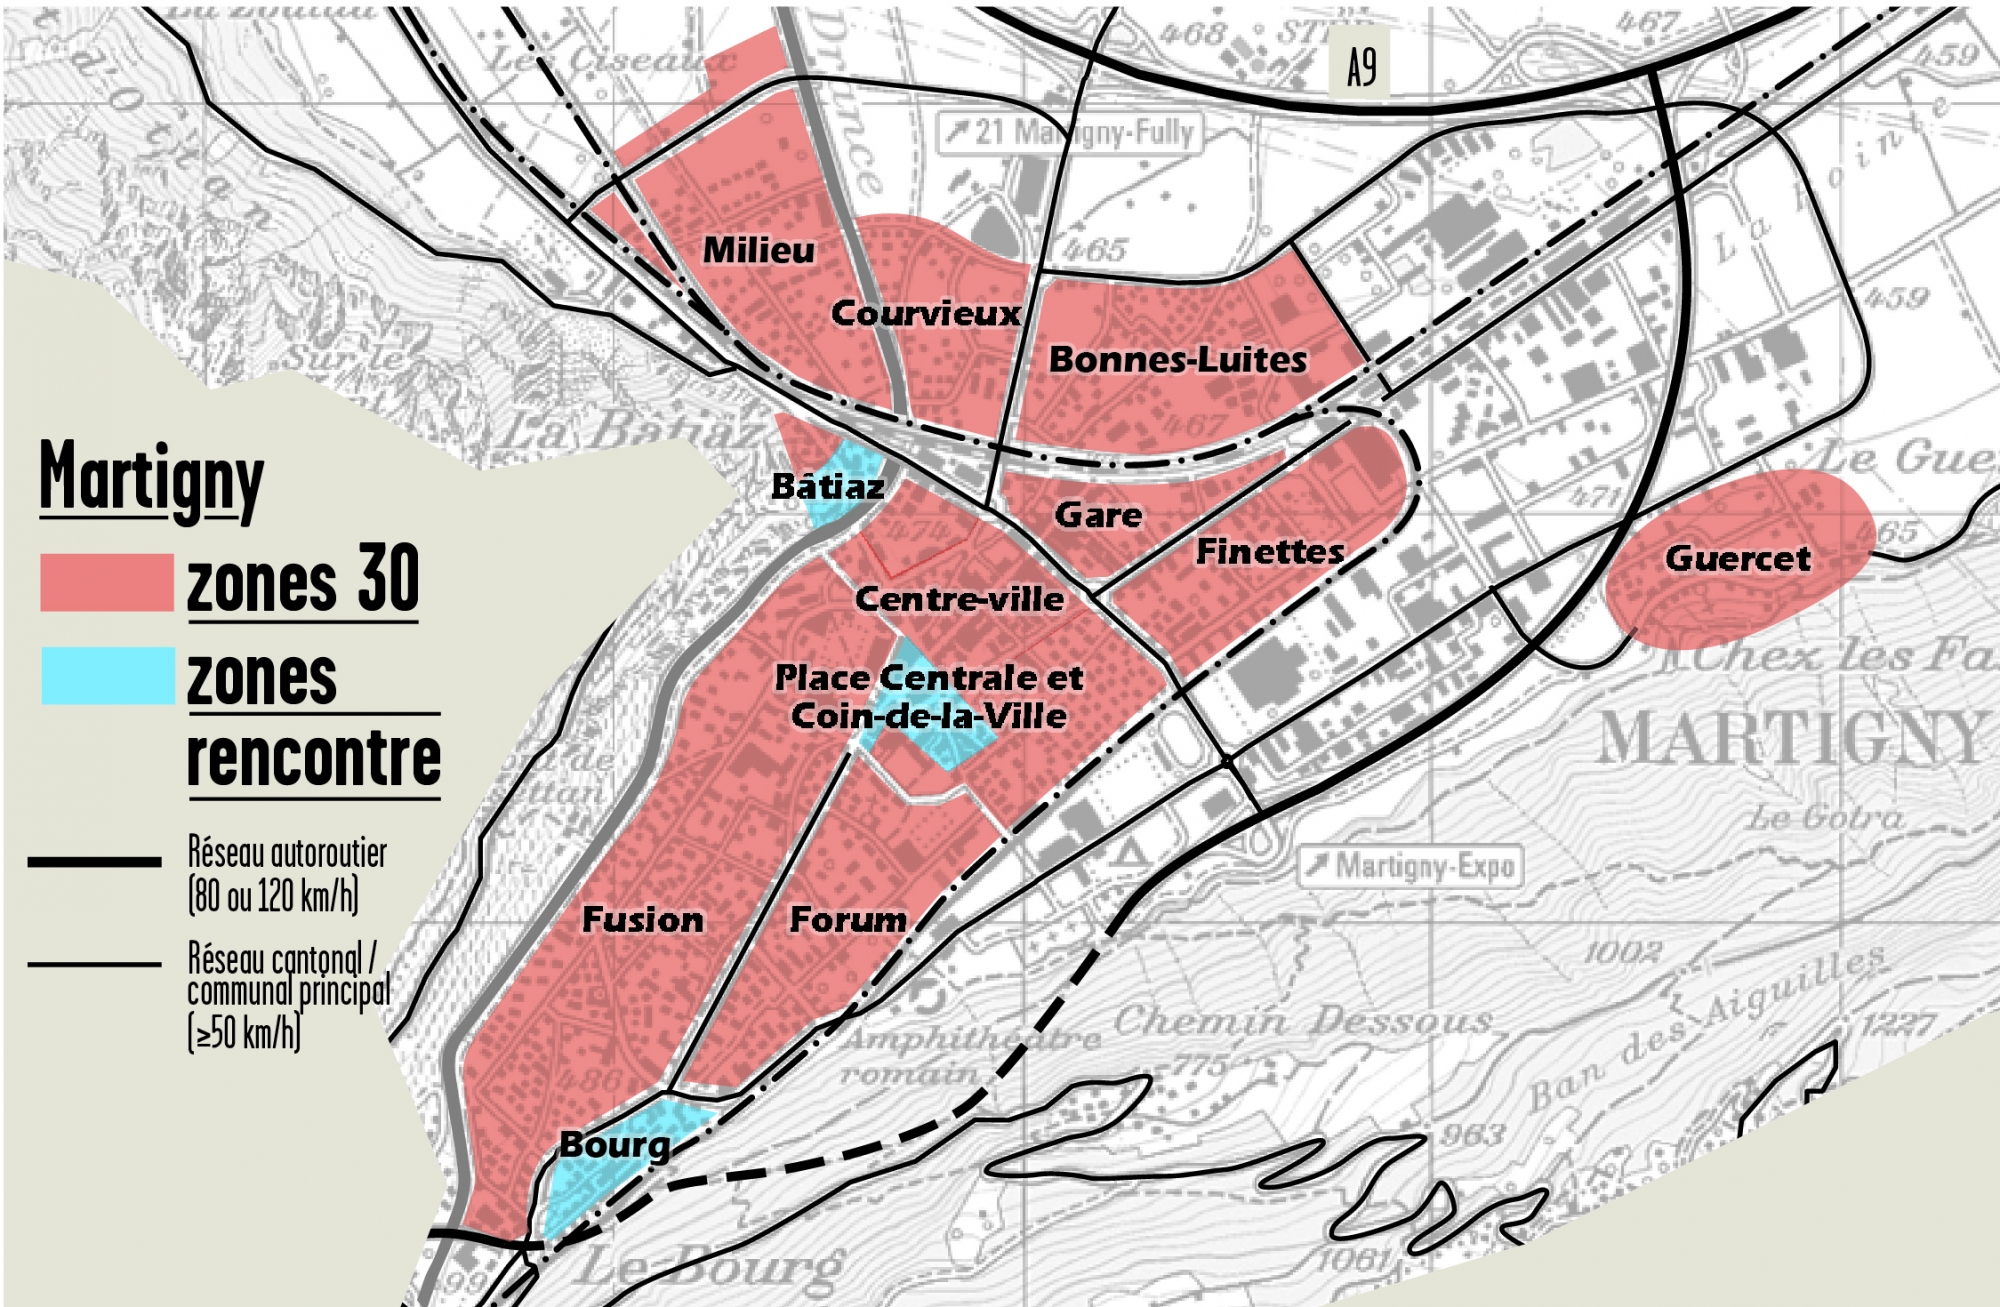 Tous les principaux quartiers de la ville de Martigny sont désormais en zones 30 km/h ou 20 km/h.